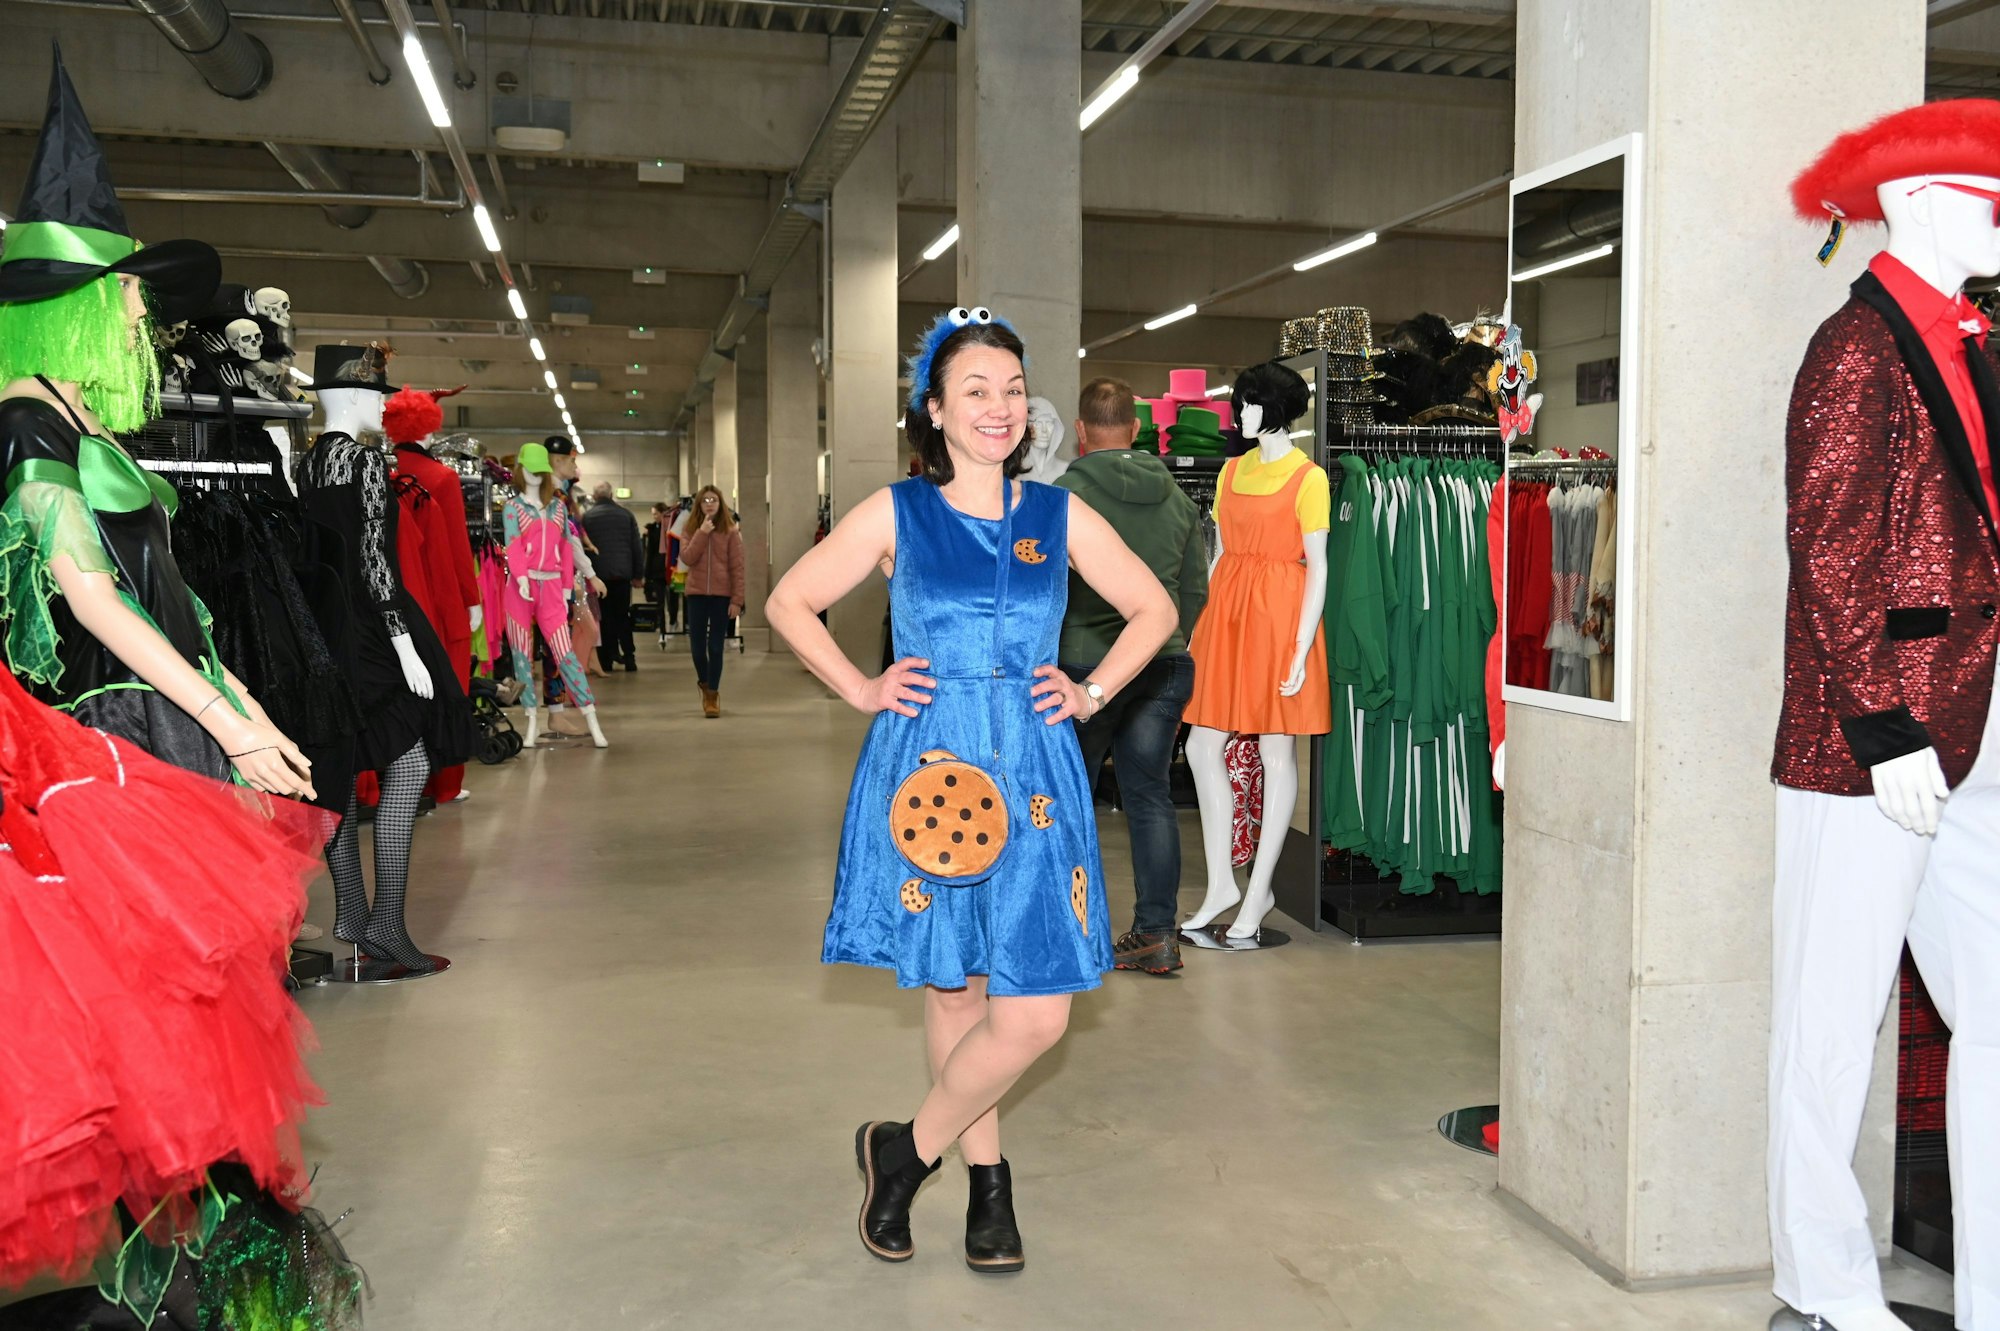 Eine Frau präsentiert ein Krümmelmonster-Kostüm in einem Verkleidungsladen.